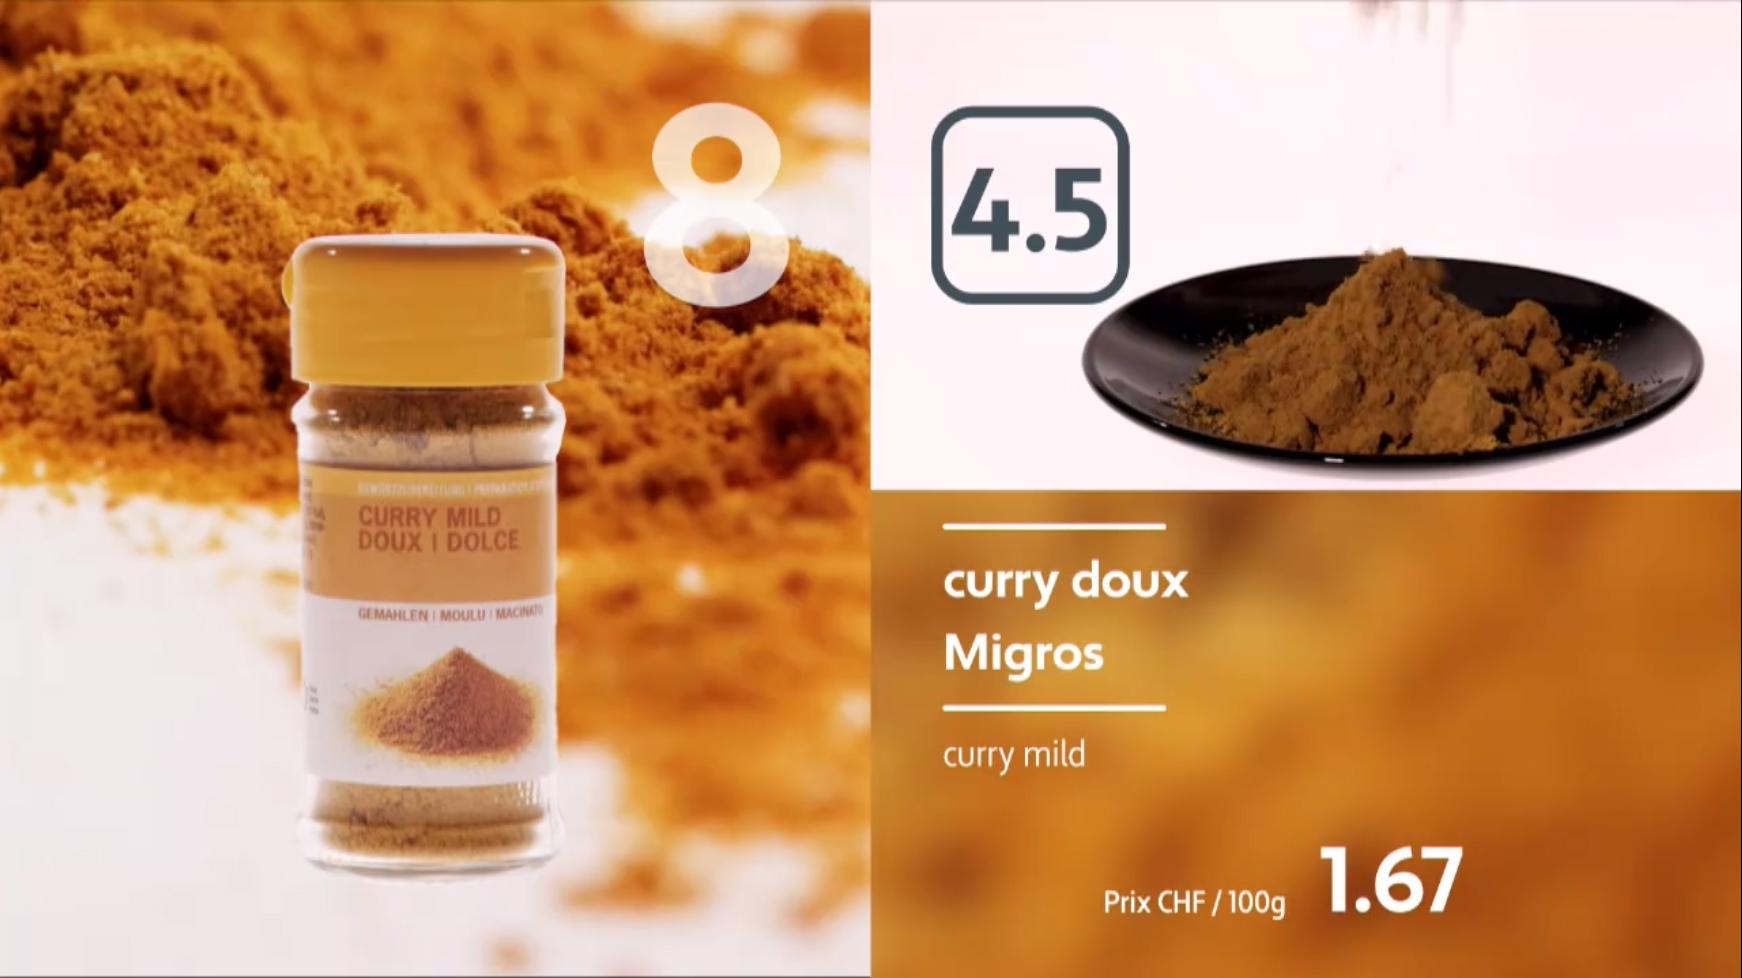 Dégustation de curry doux industriels.